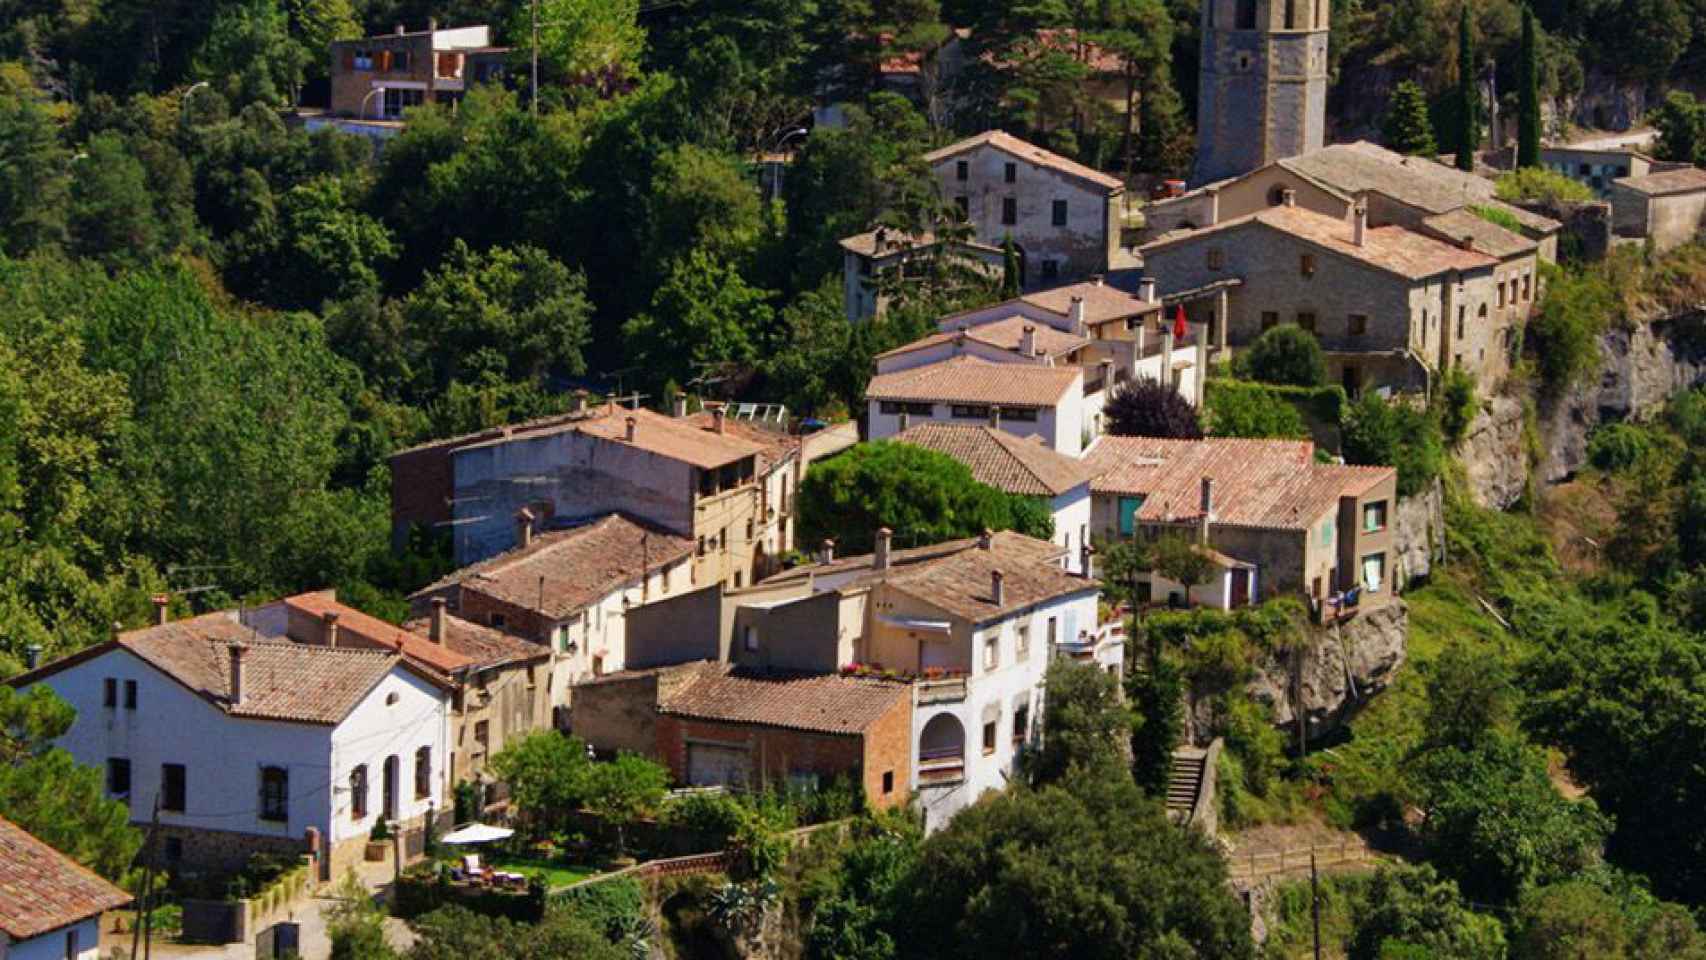 Imagen de la localidad de Sant Quirze Safaja / CG